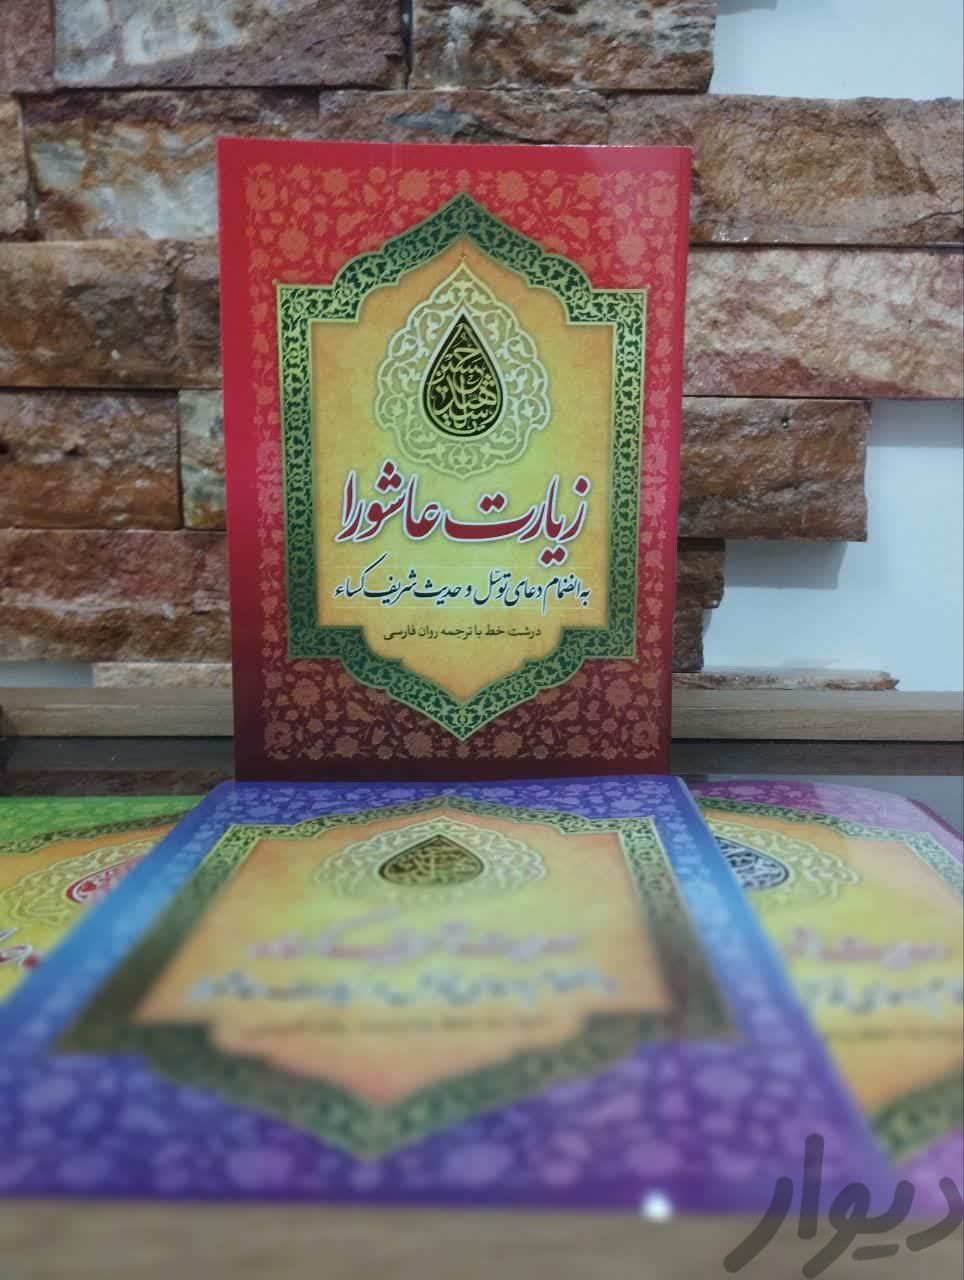 دعا زیارت عاشوا، دعای توسل، حدیث کسا|کتاب و مجله مذهبی|تهران, میدان انقلاب|دیوار